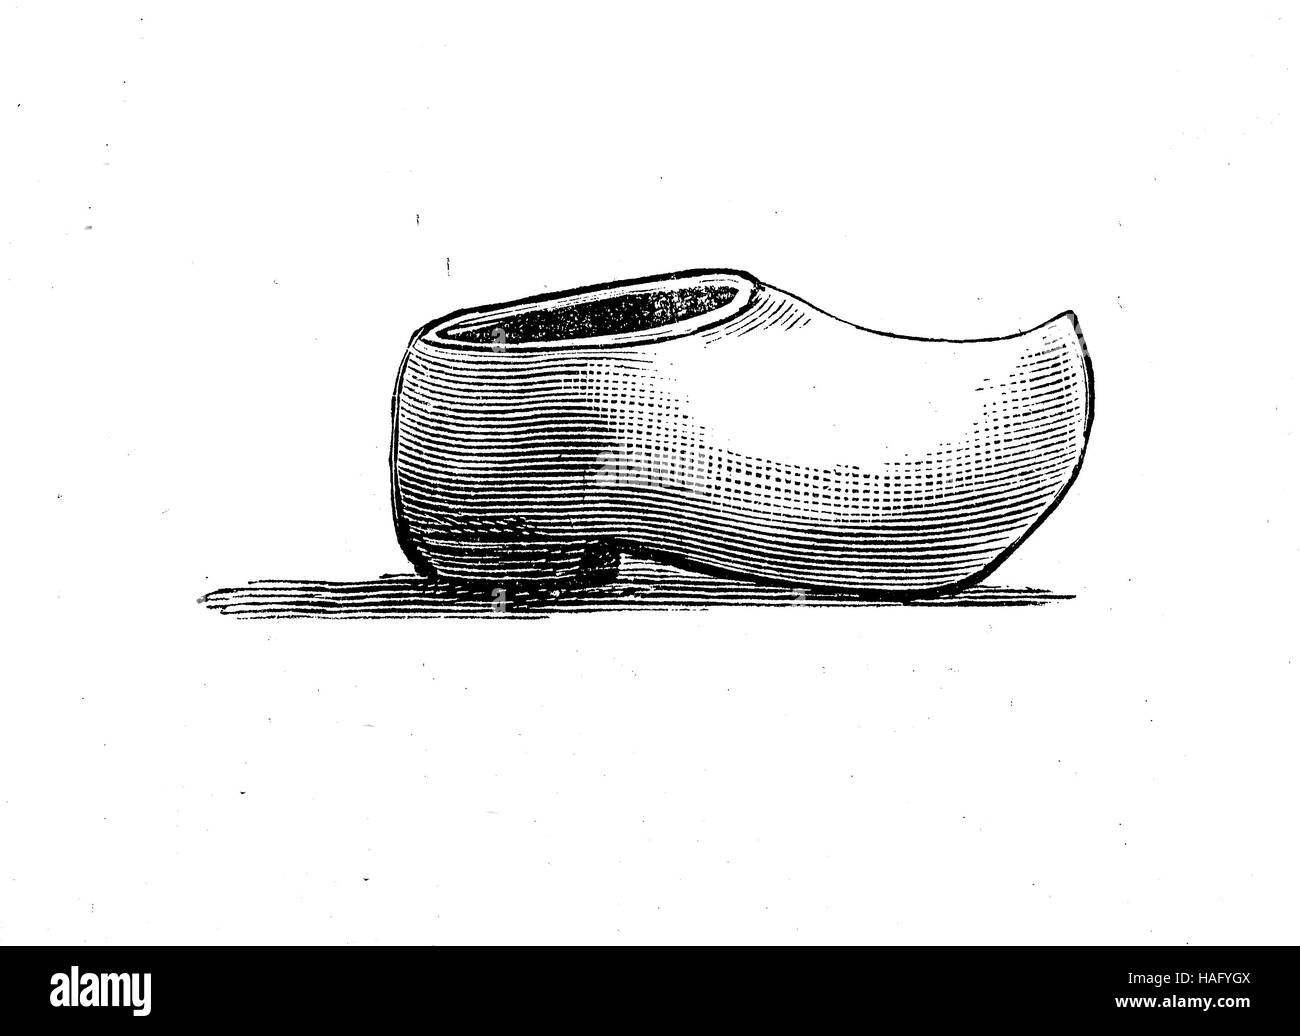 Shoe fashion du passé, les sabots sont un type de chaussures faites en tout ou en partie à partir de bois, gravure sur bois de l'année 1880 Banque D'Images